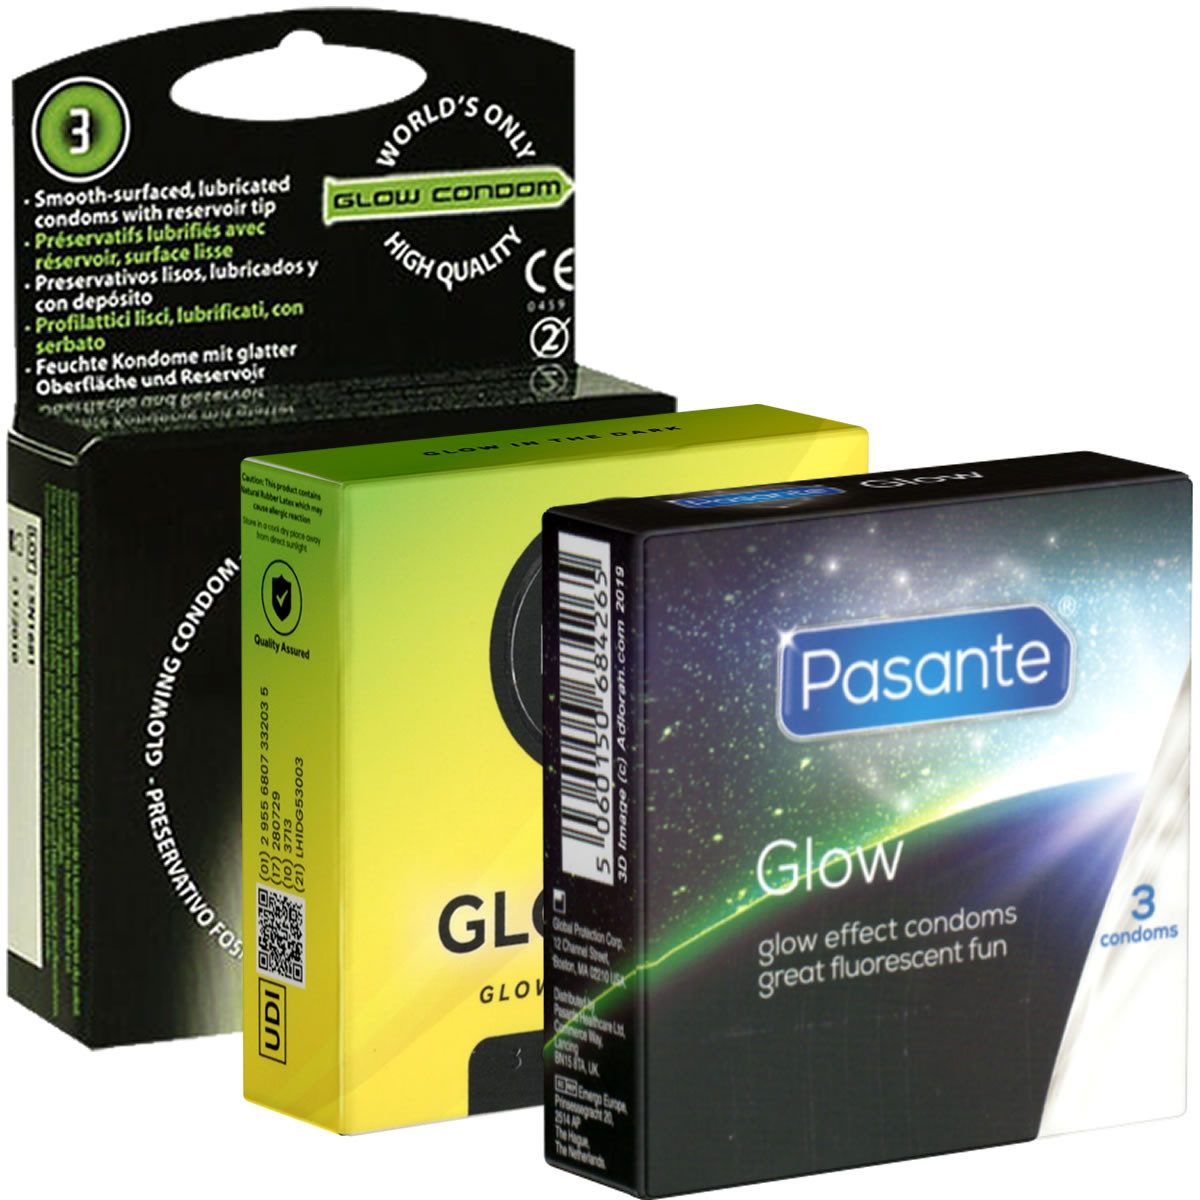 Kondomotheke Kondome Glow Mix 3 Packungen leuchtende Kondome, insgesamt, 9 St., Kondome die im Dunkeln leuchten, Leuchtkondome für mehr Fun im Dunkeln